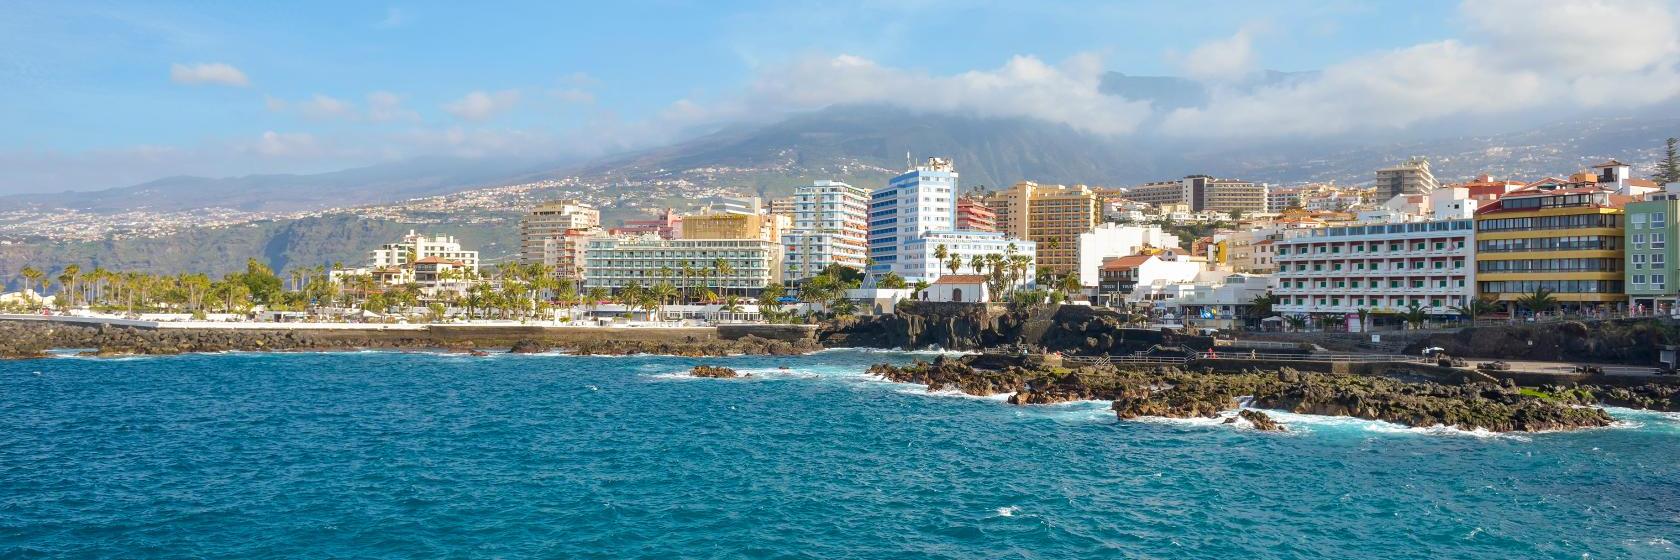 10 Best Puerto de la Cruz Hotels, Spain (From $39)